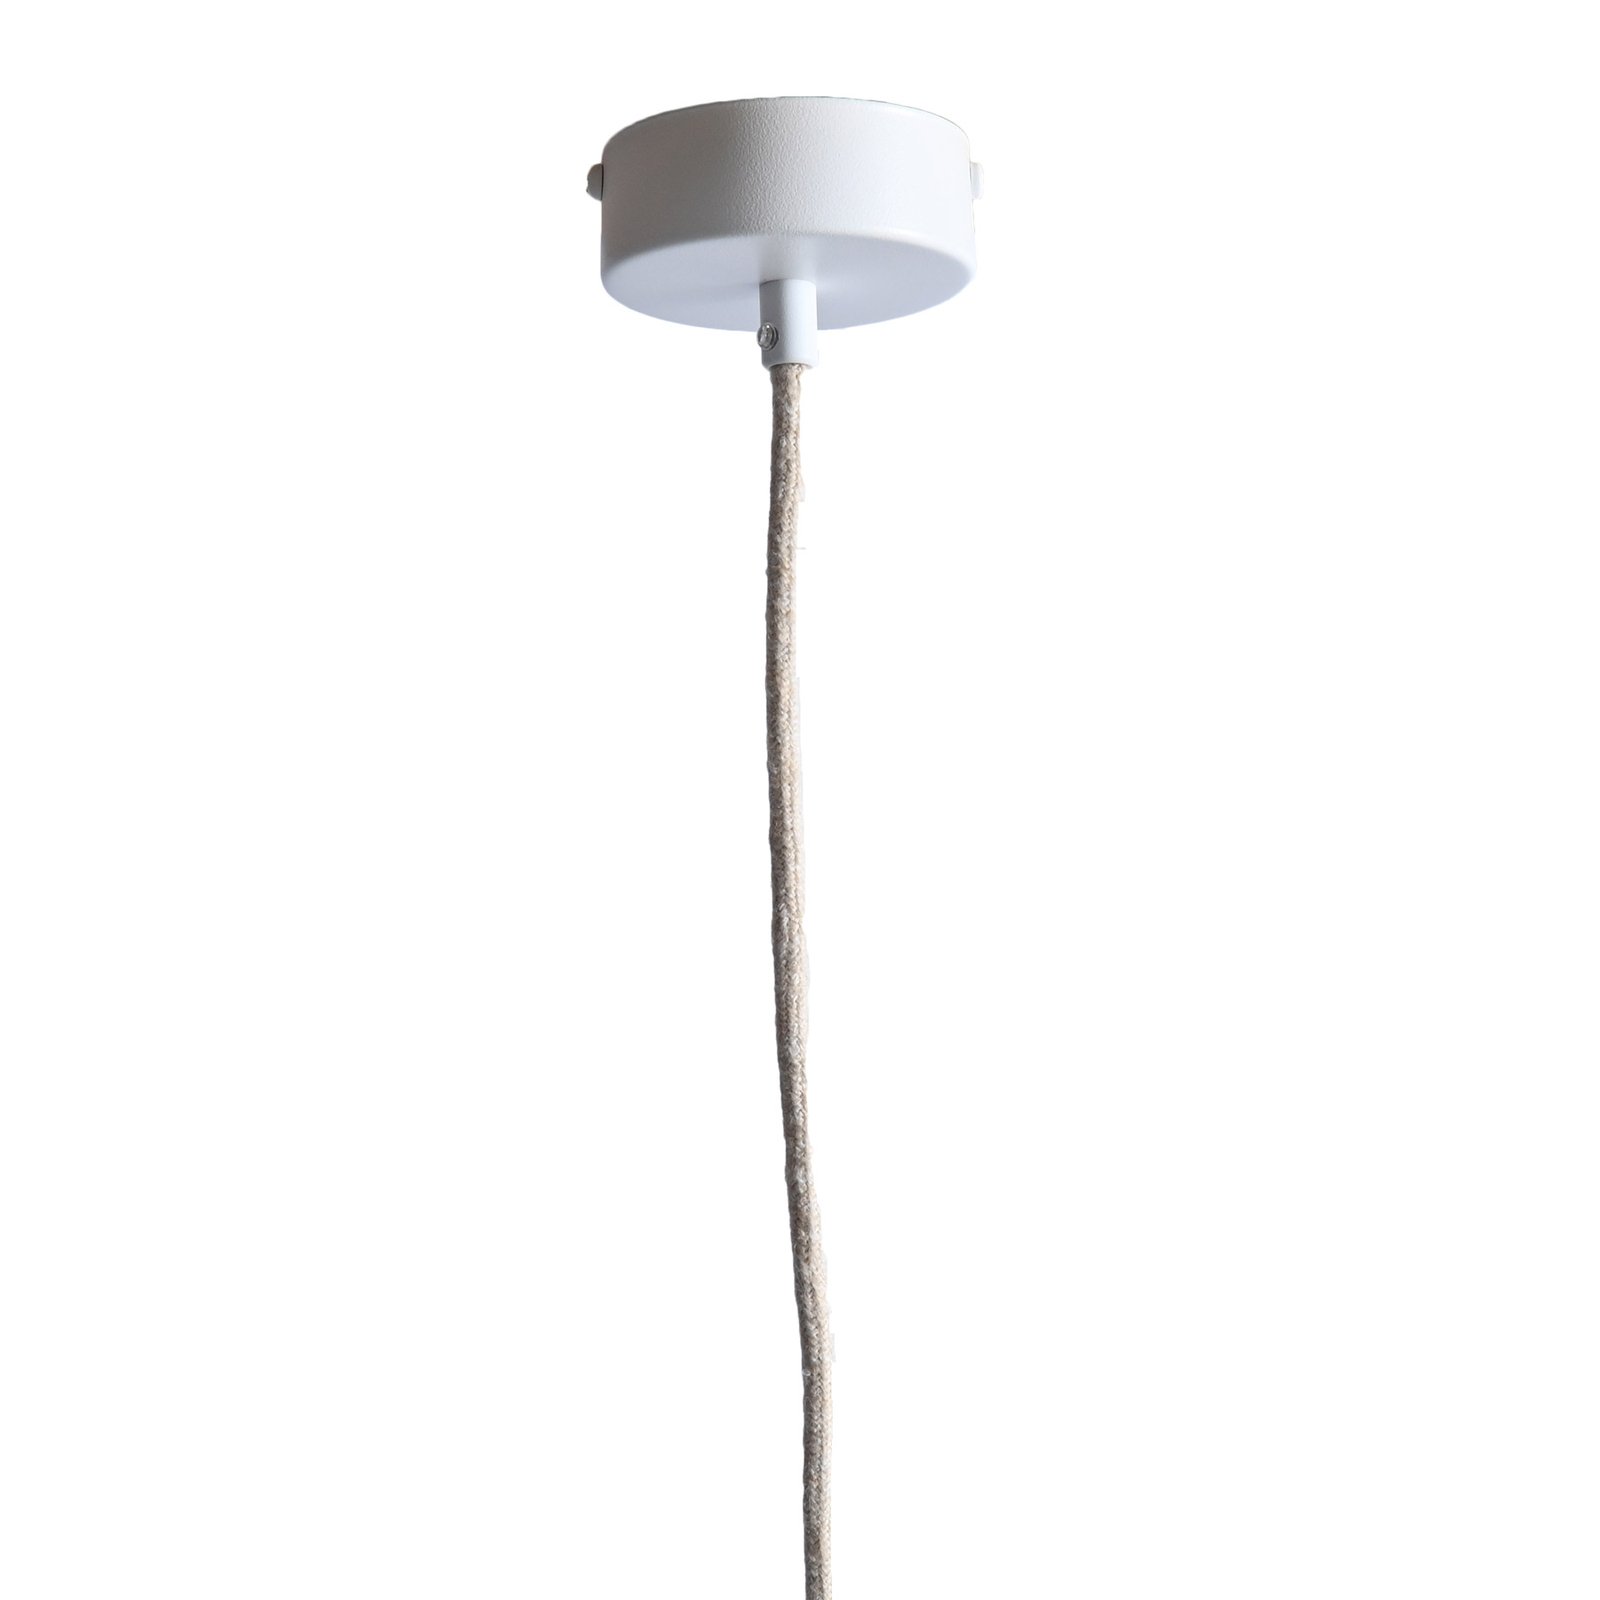 LeuchtNatur Nux hanglamp hooi/Alpenweide, wit